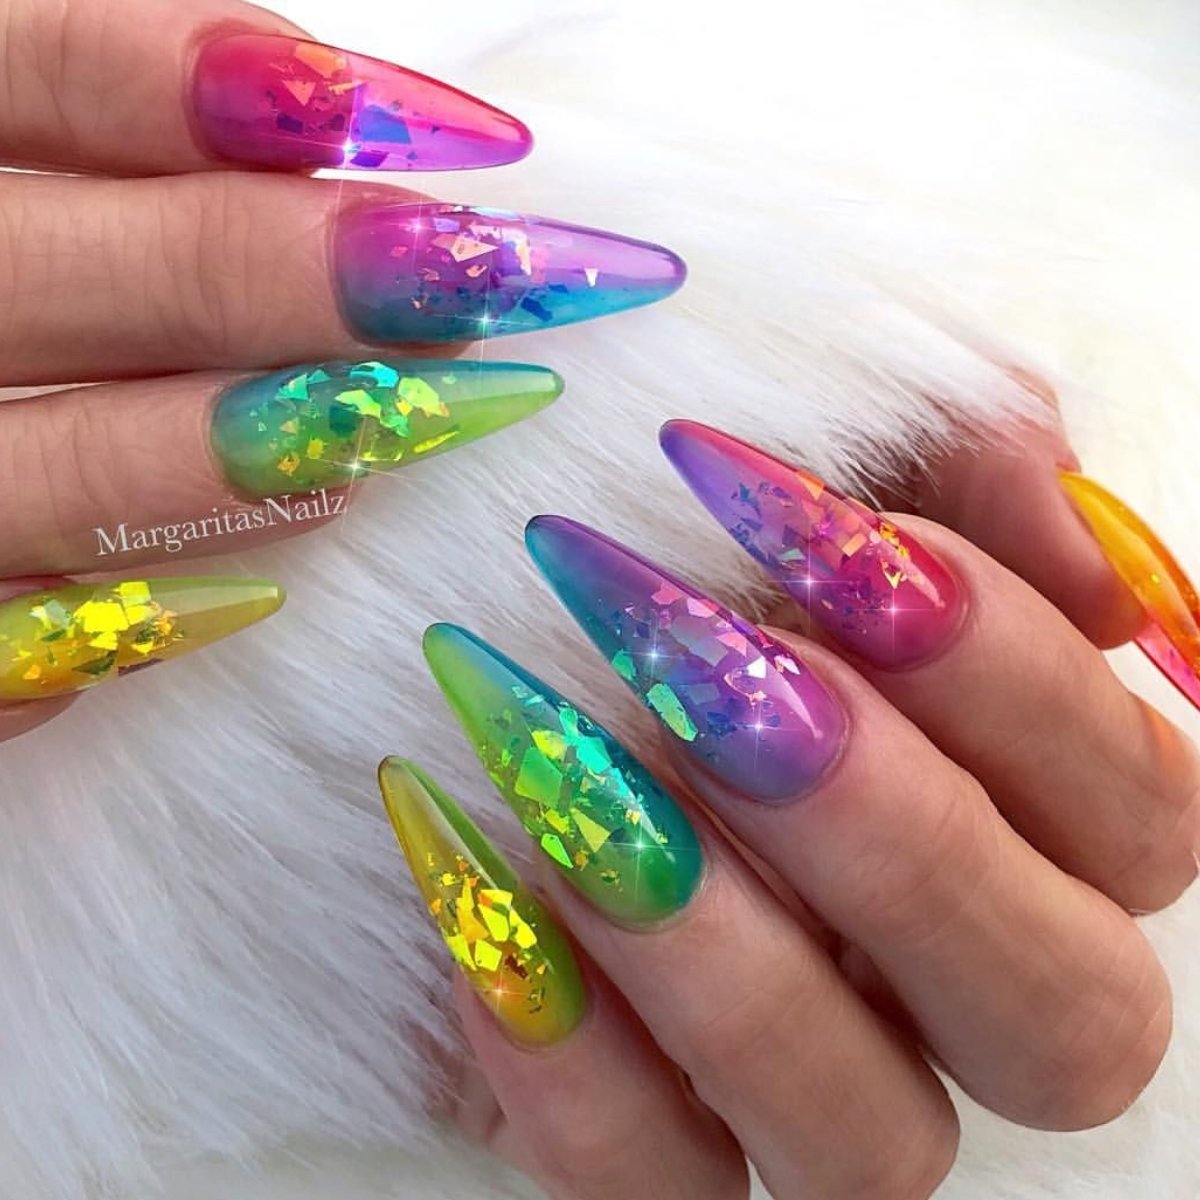 19 Diseños de uñas para llenar de color tus manos y tu vida